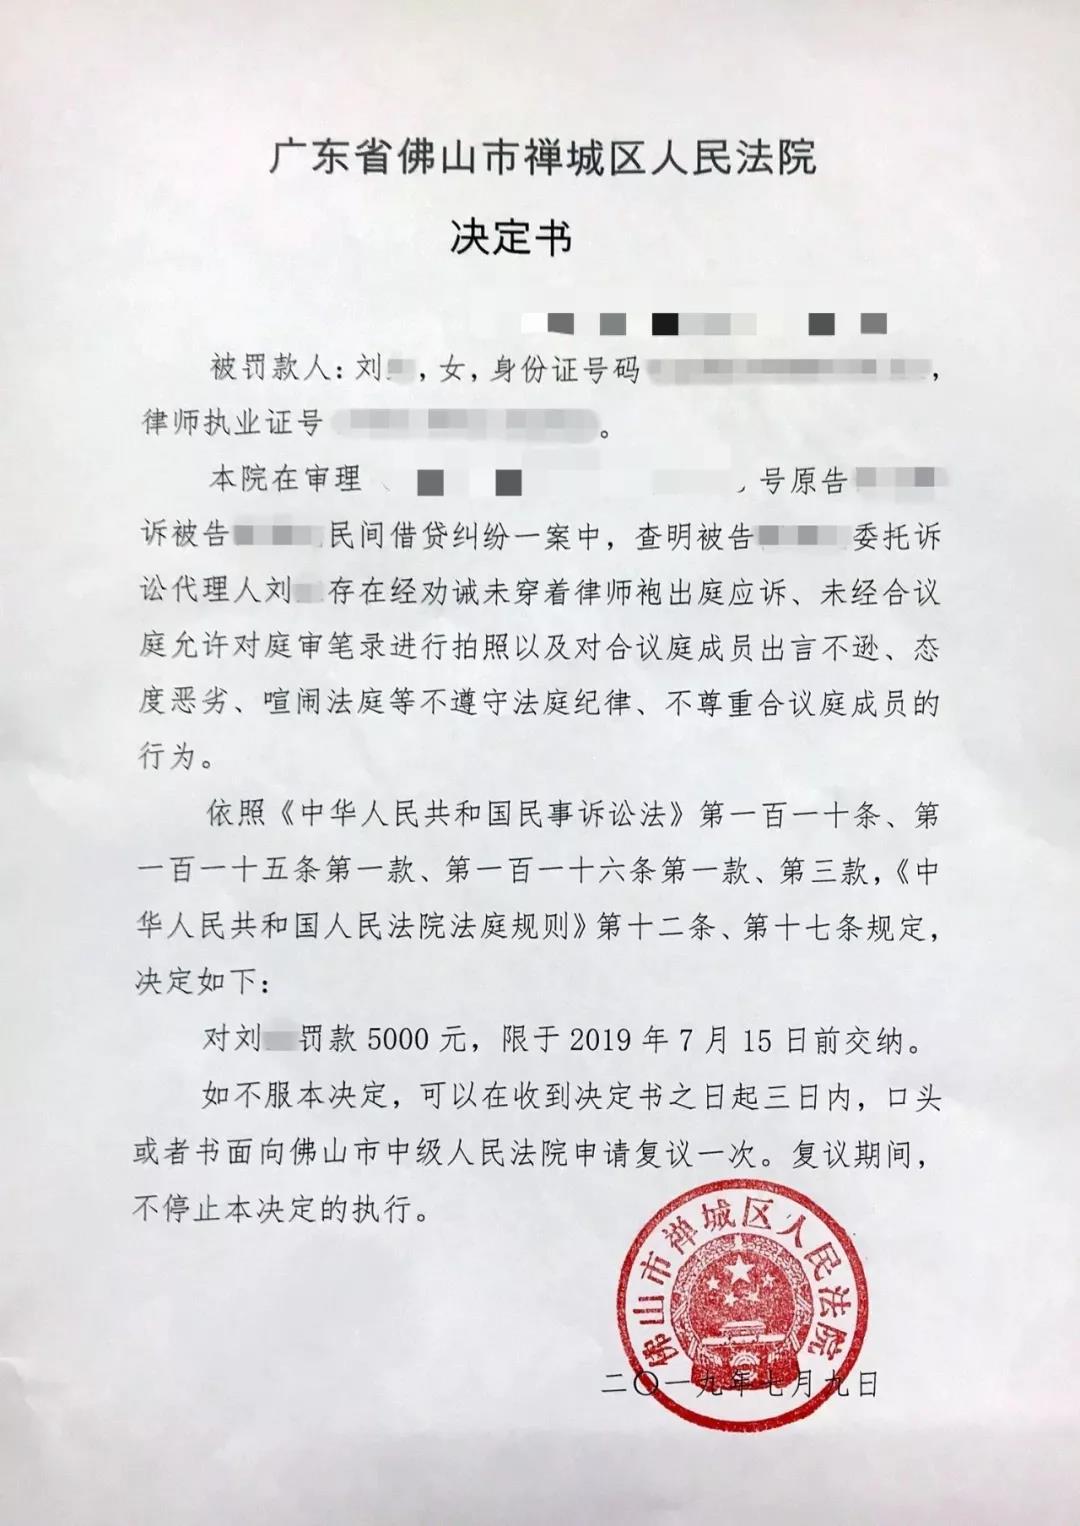 正文作出处罚决定后,禅城法院对刘某的相关违规行为,向广州市律师协会